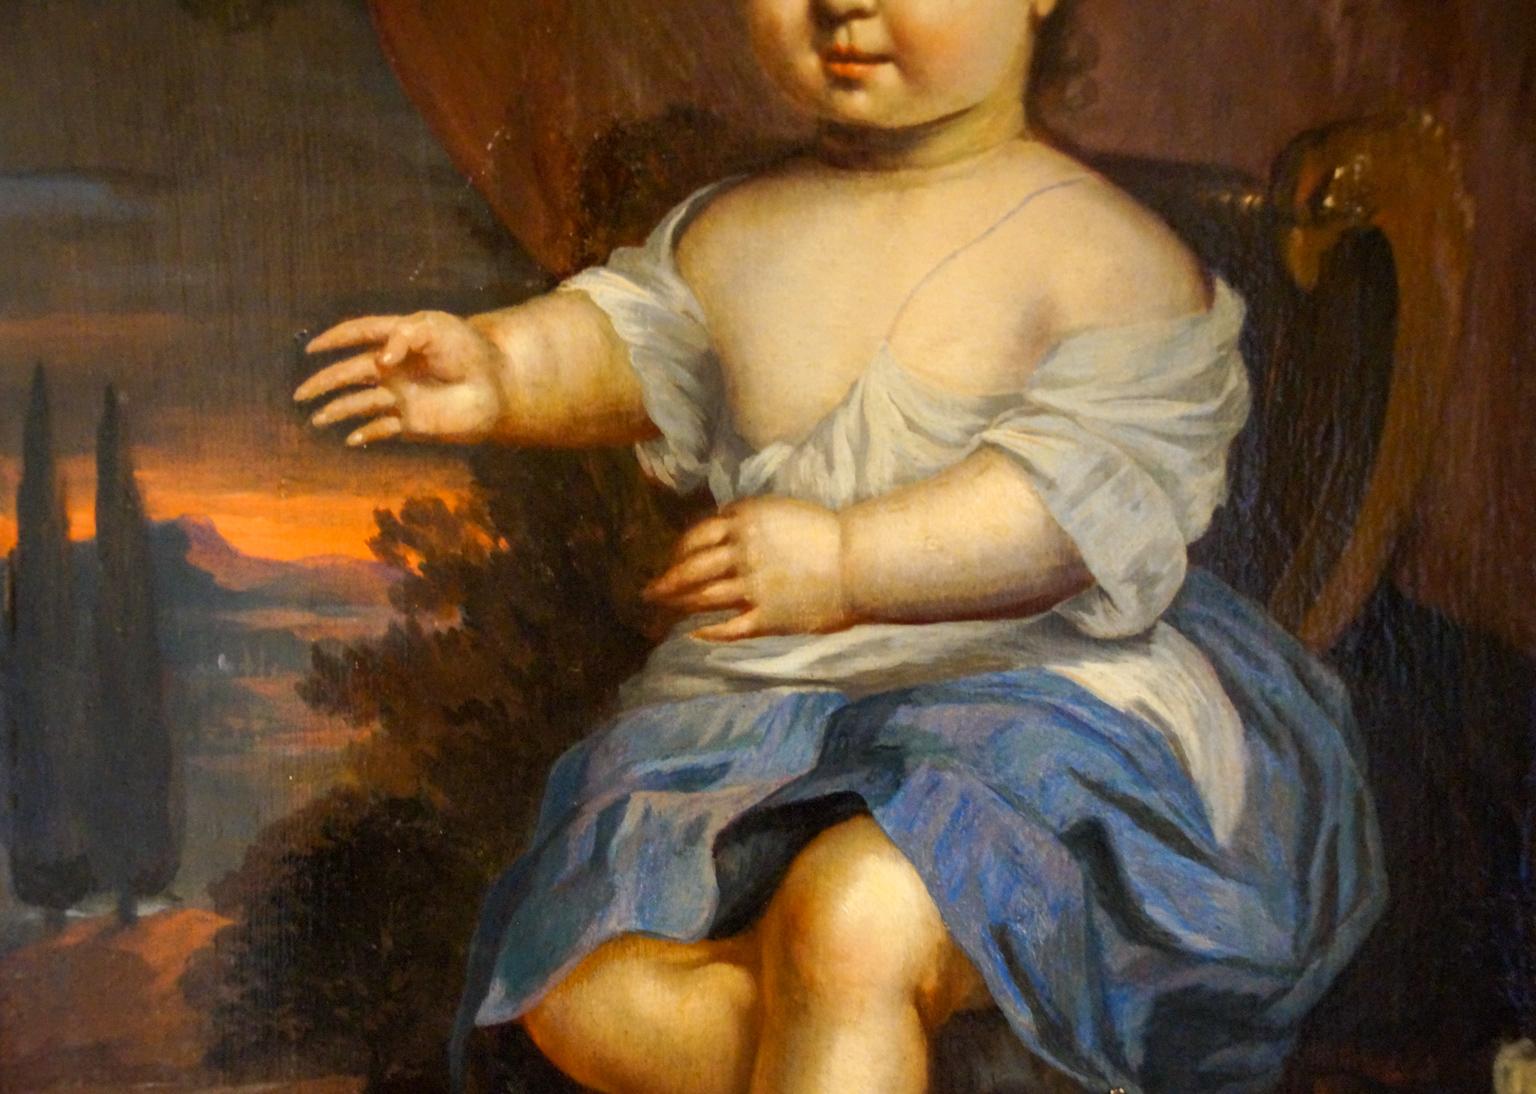 Oiled Portrait of a Young Boy, Dutch School